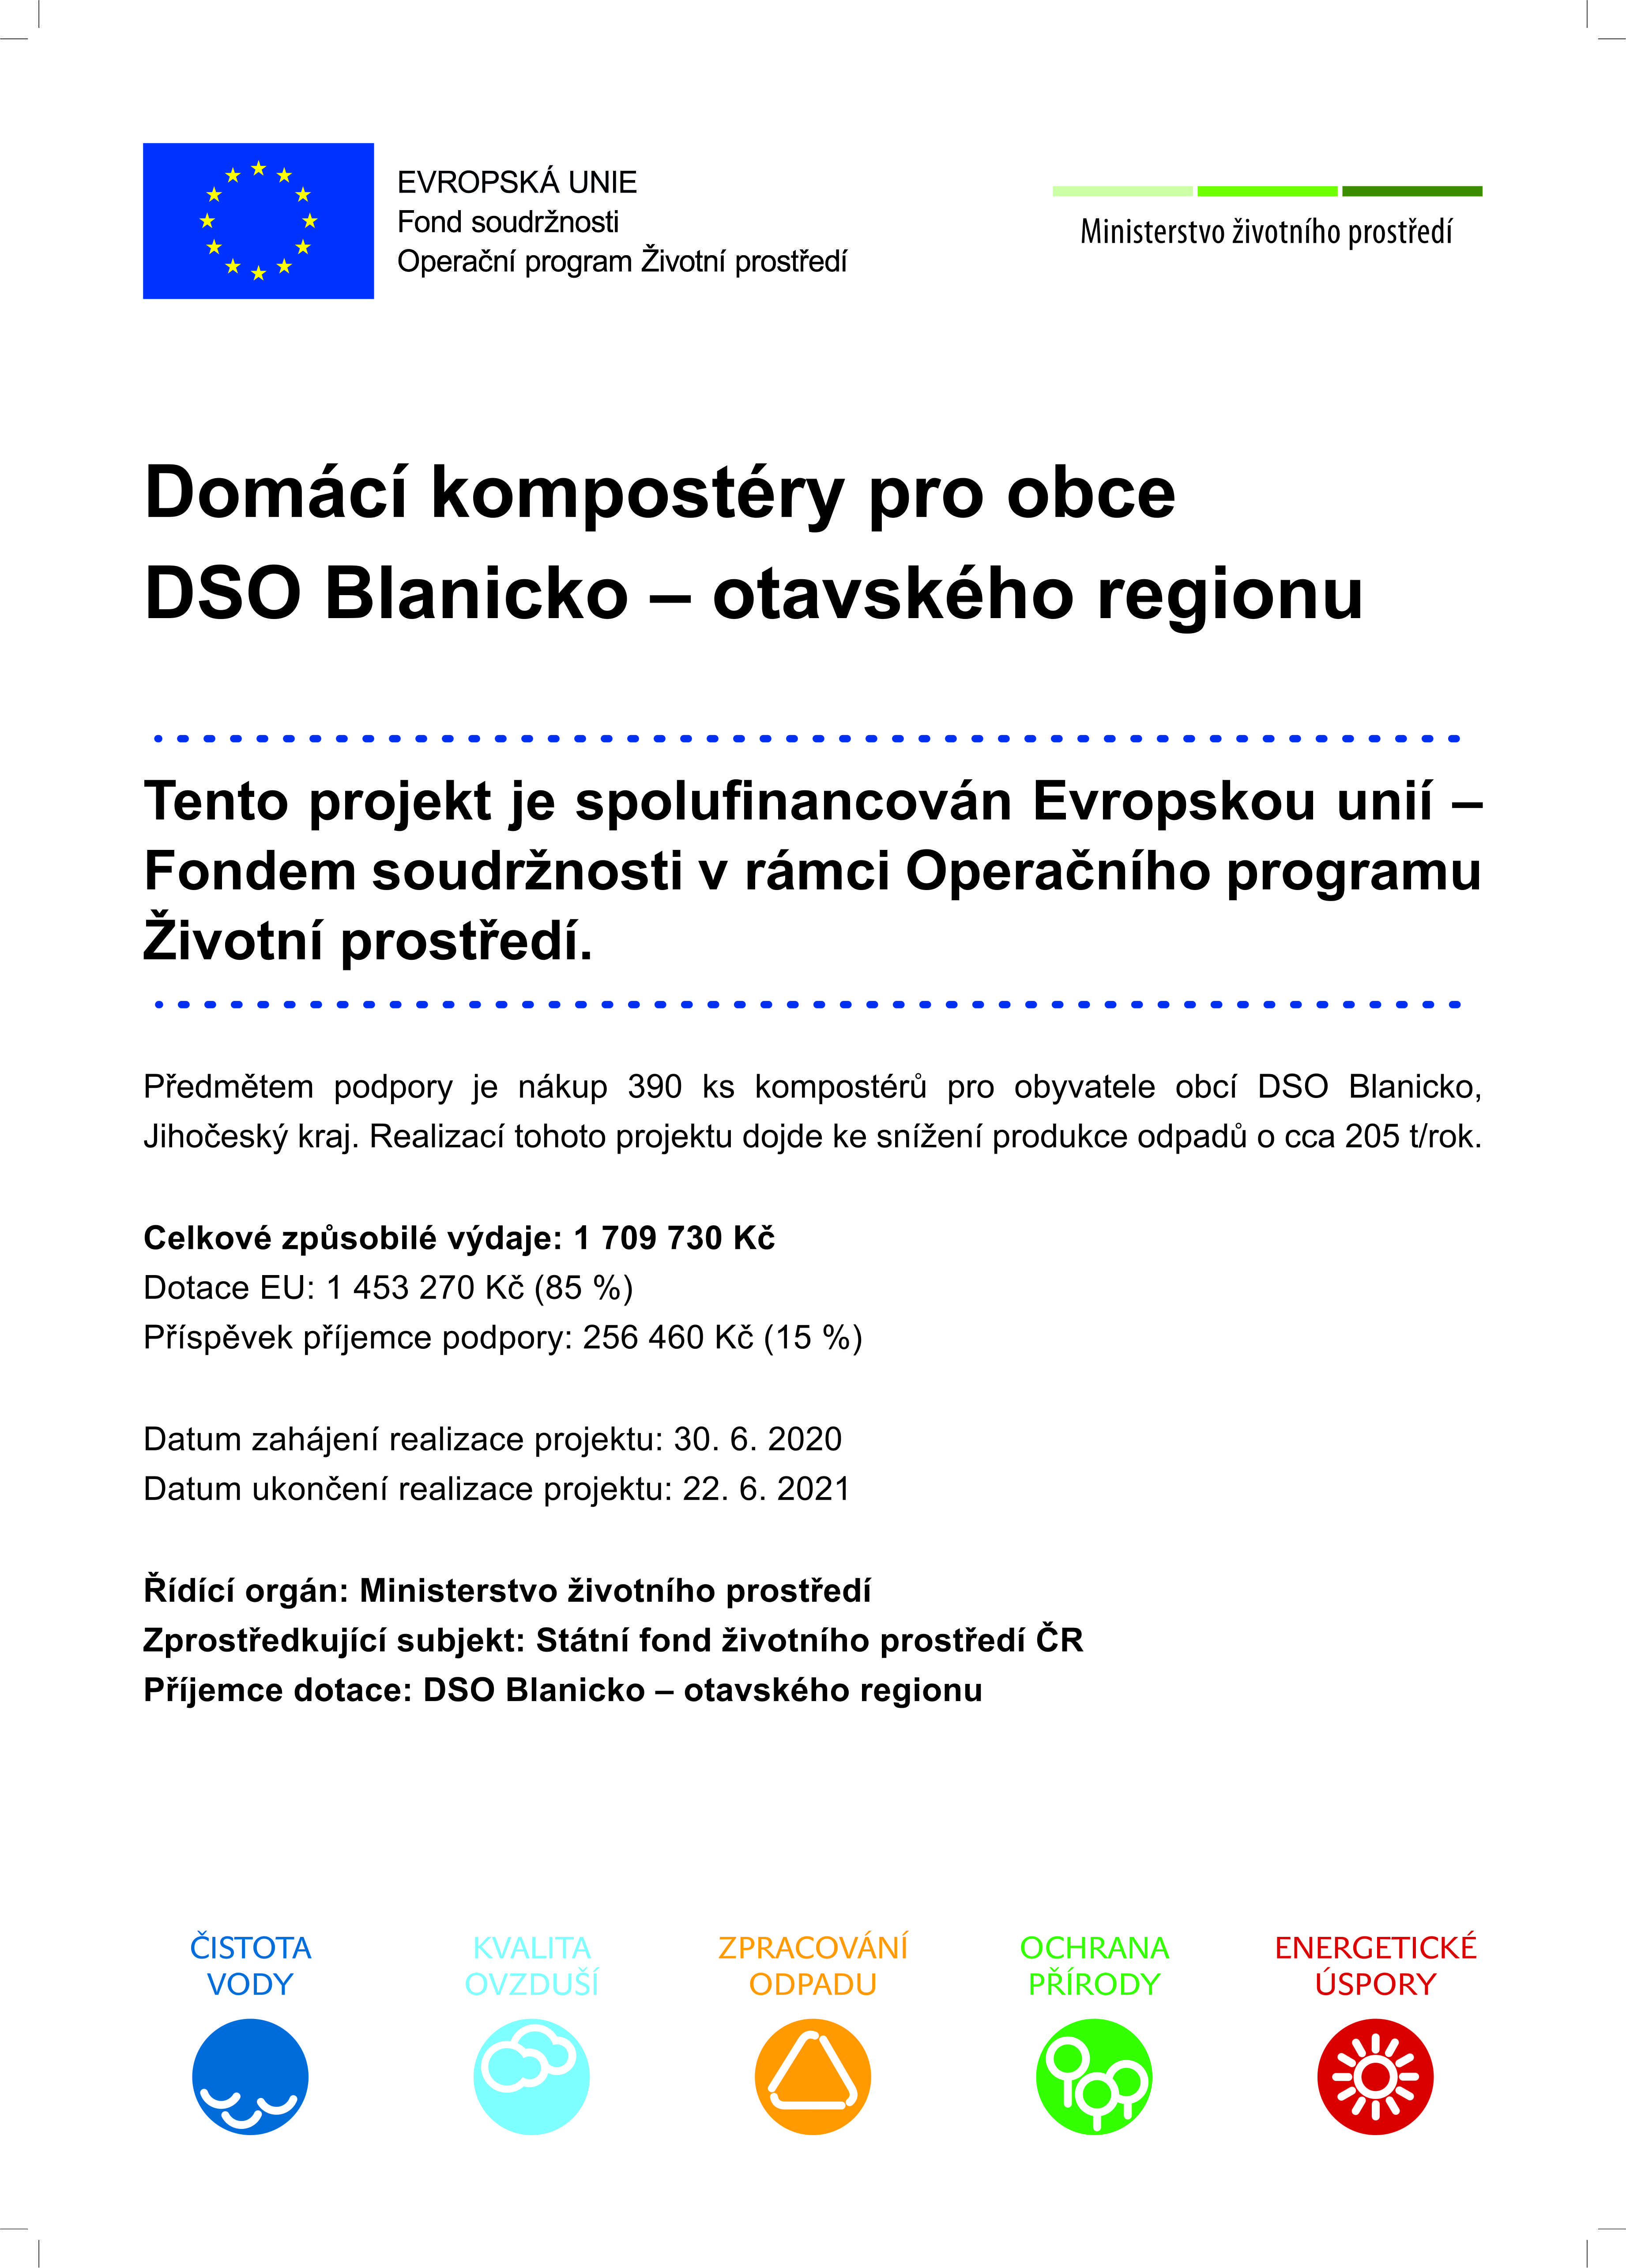 Obrázek - Domácí kompostéry pro obce DSO Blanicko - otavského regionu